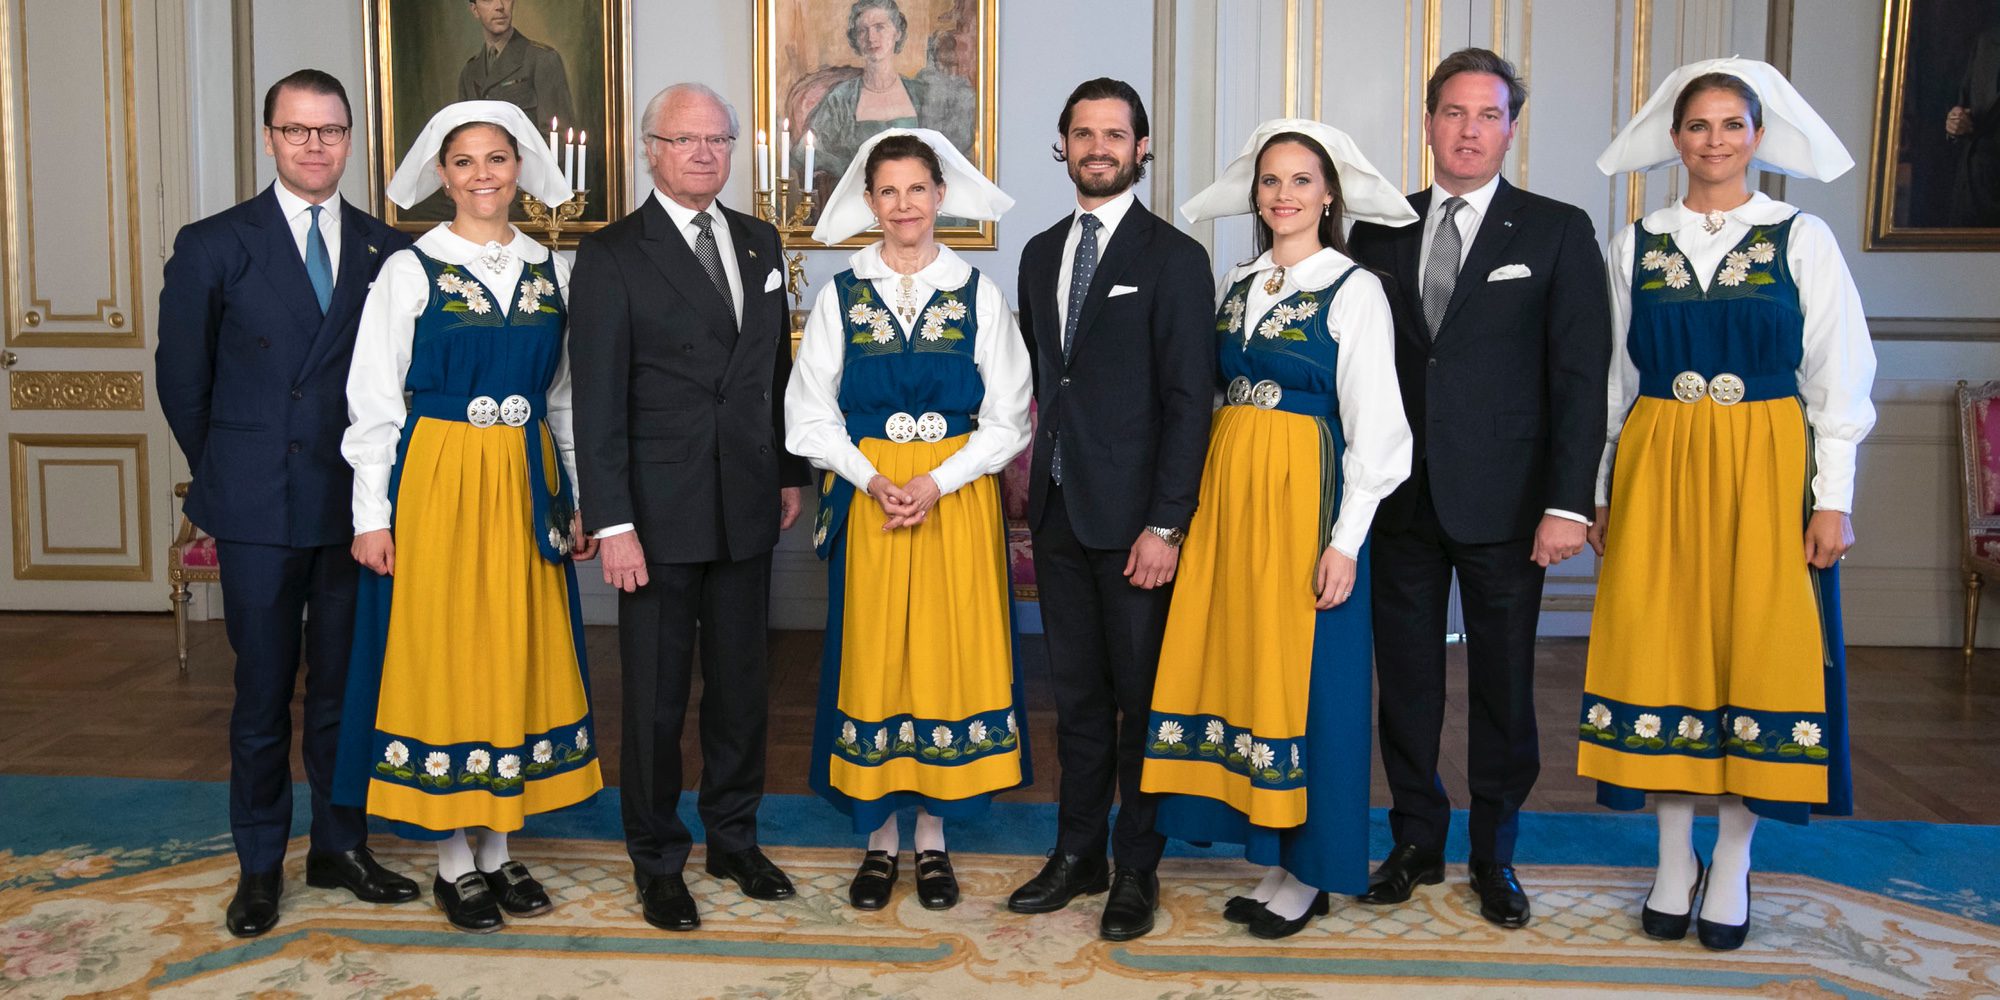 El regreso de Magdalena de Suecia, el embarazo de Sofía Hellqvist y la alegría de Estela de Suecia marcan el Día Nacional